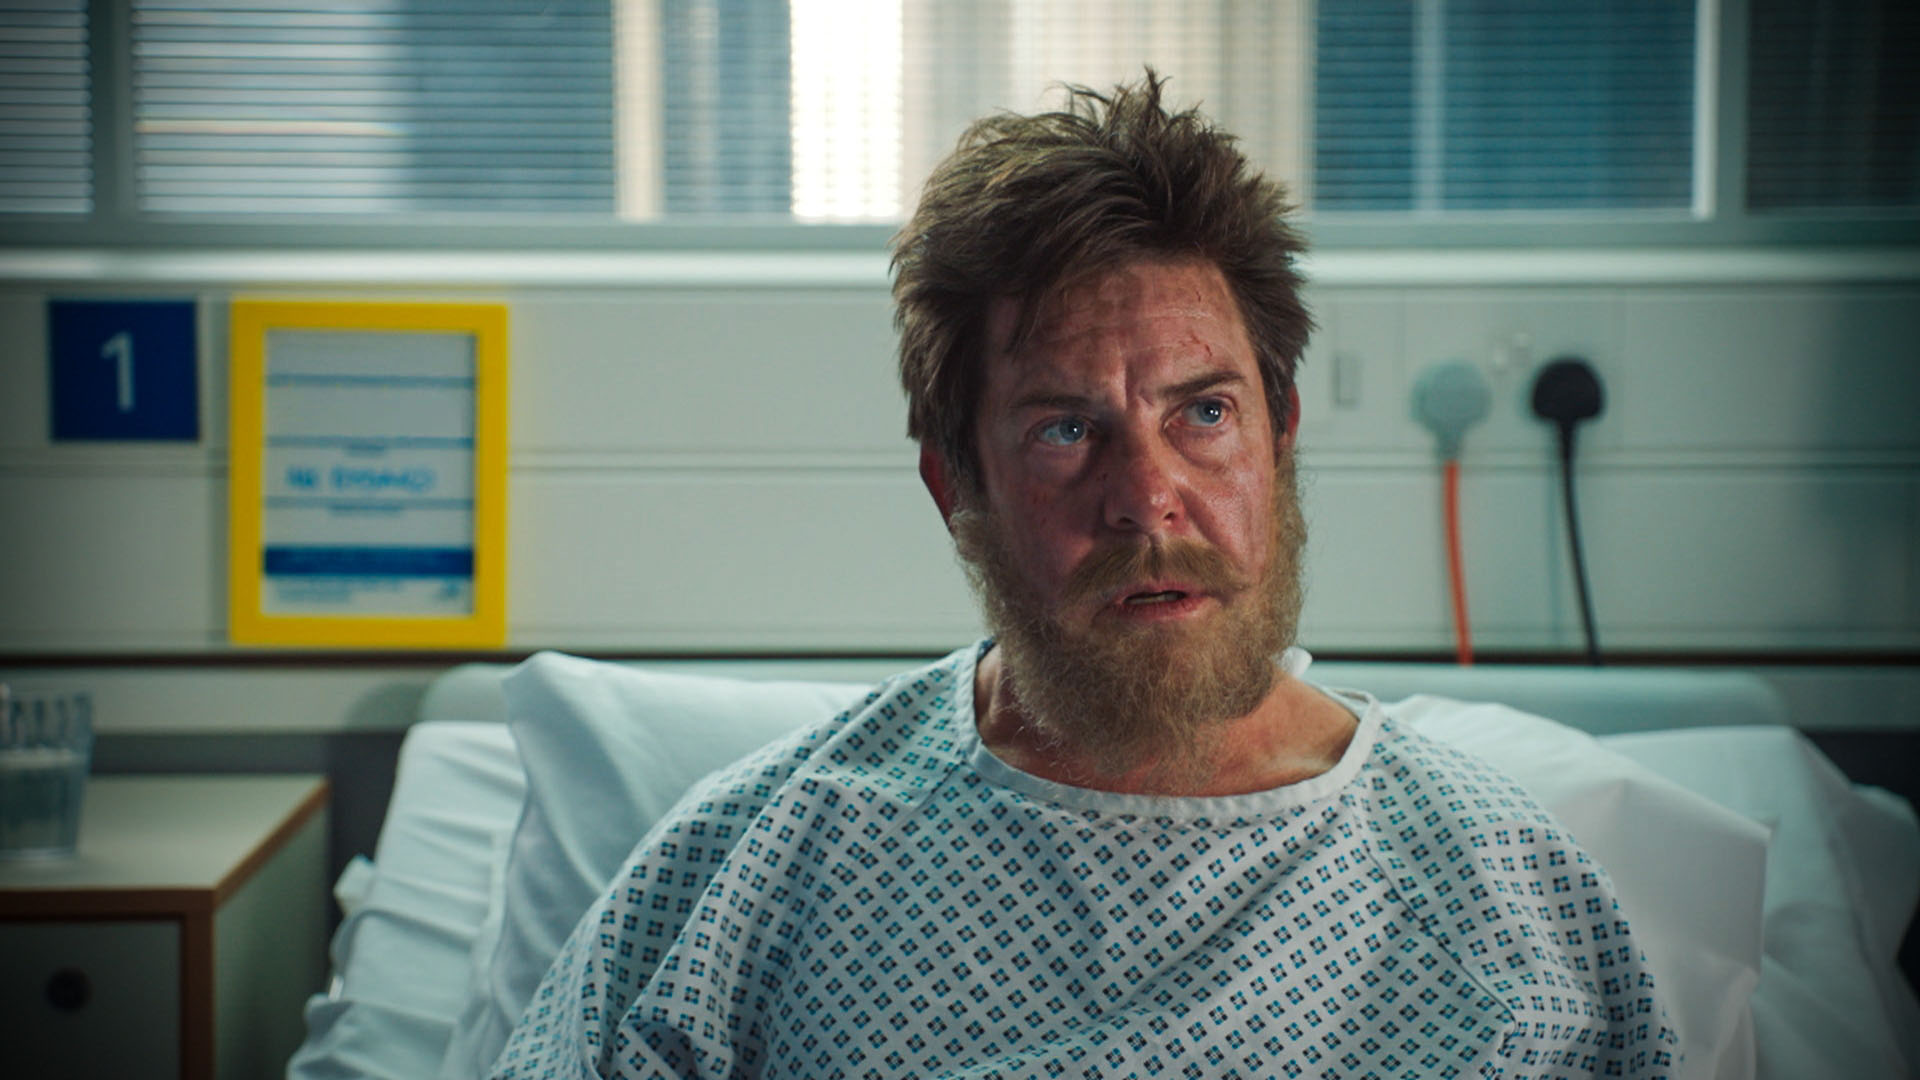 Monarch of the Glen star Hamish Clark plays homeless patient Ken Davies.